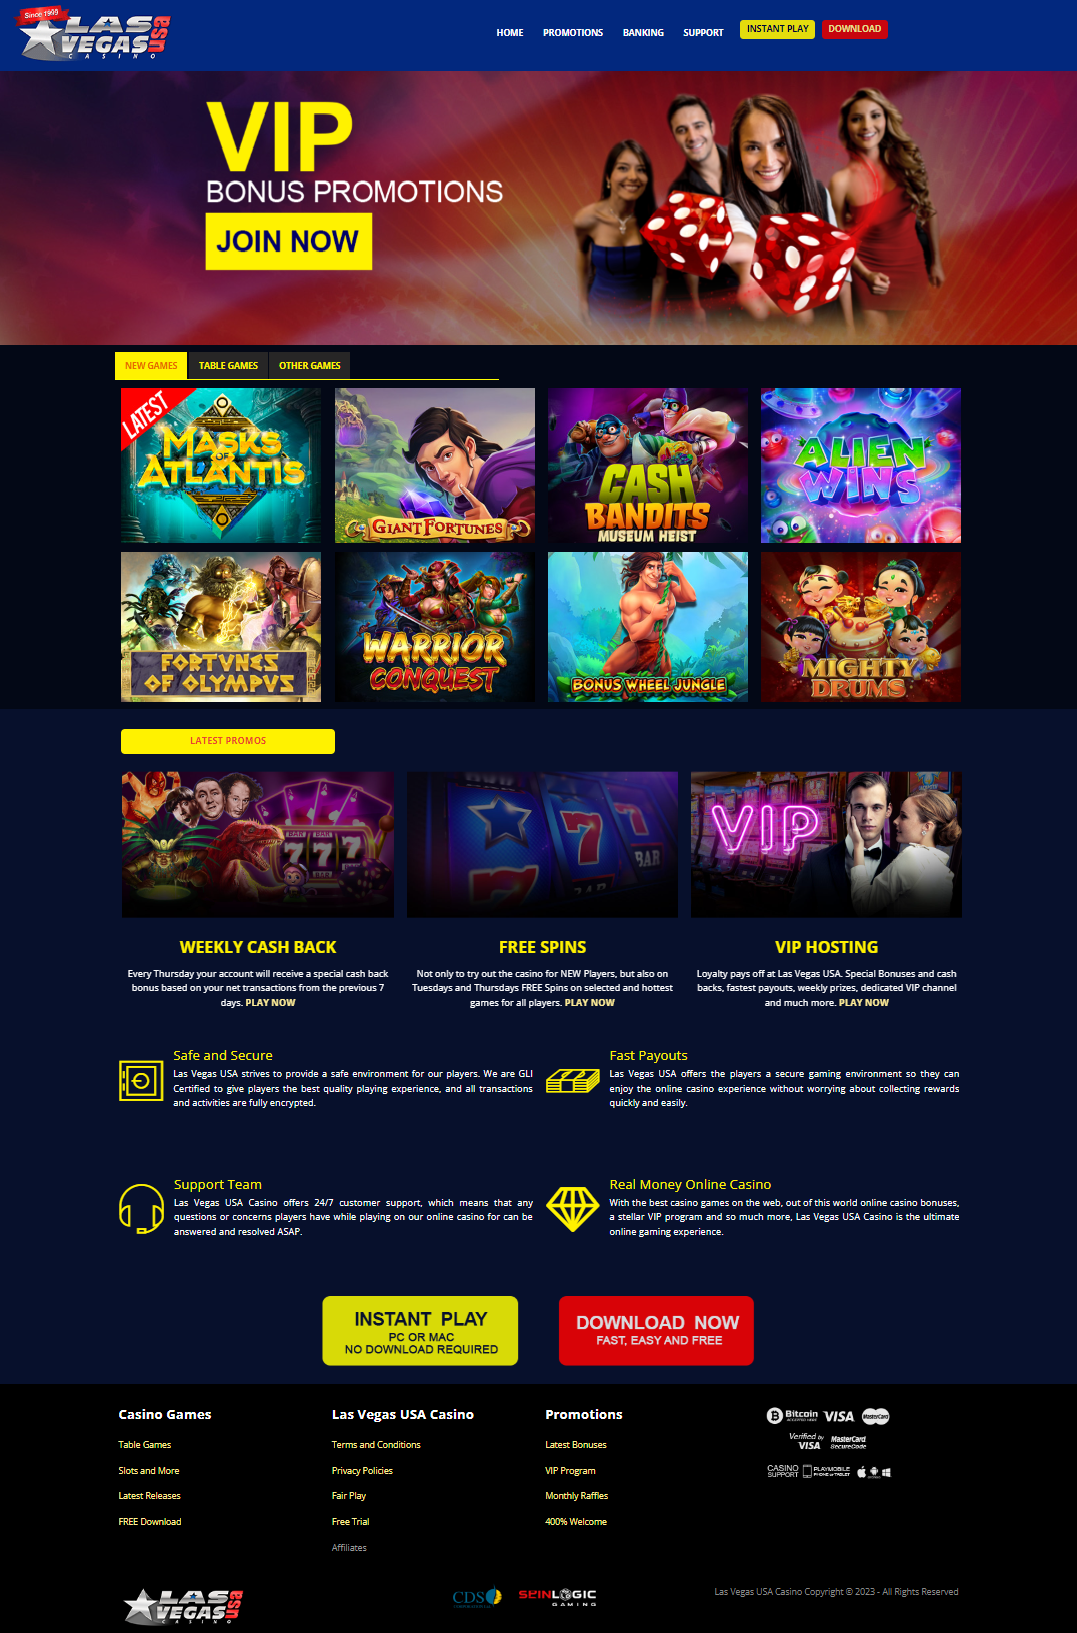 Las Vegas USA Casino Homepage